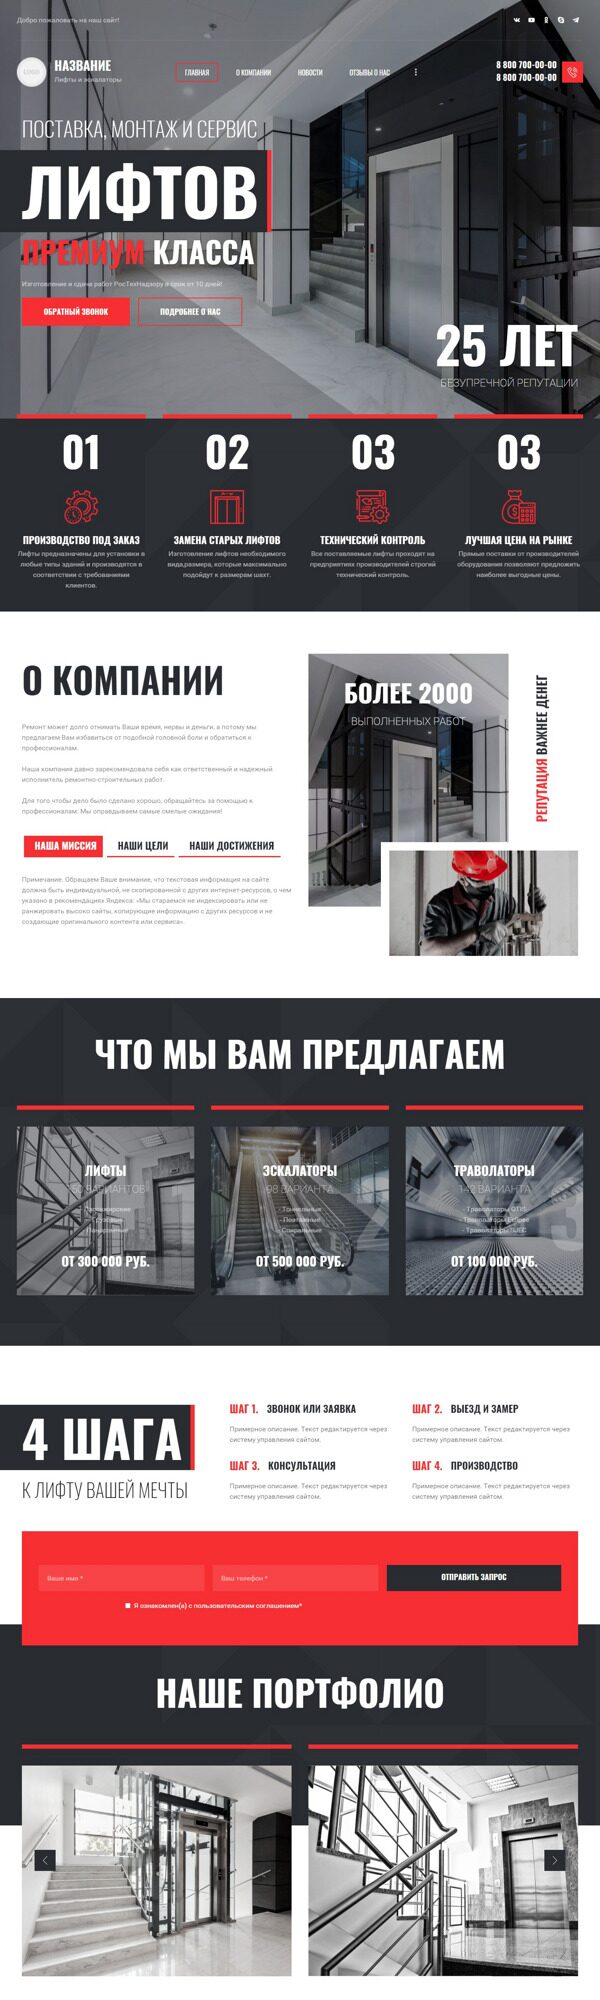 Готовый Сайт-Бизнес № 3992189 - Продажа и обслуживание лифтов и эскалаторов (Десктопная версия)